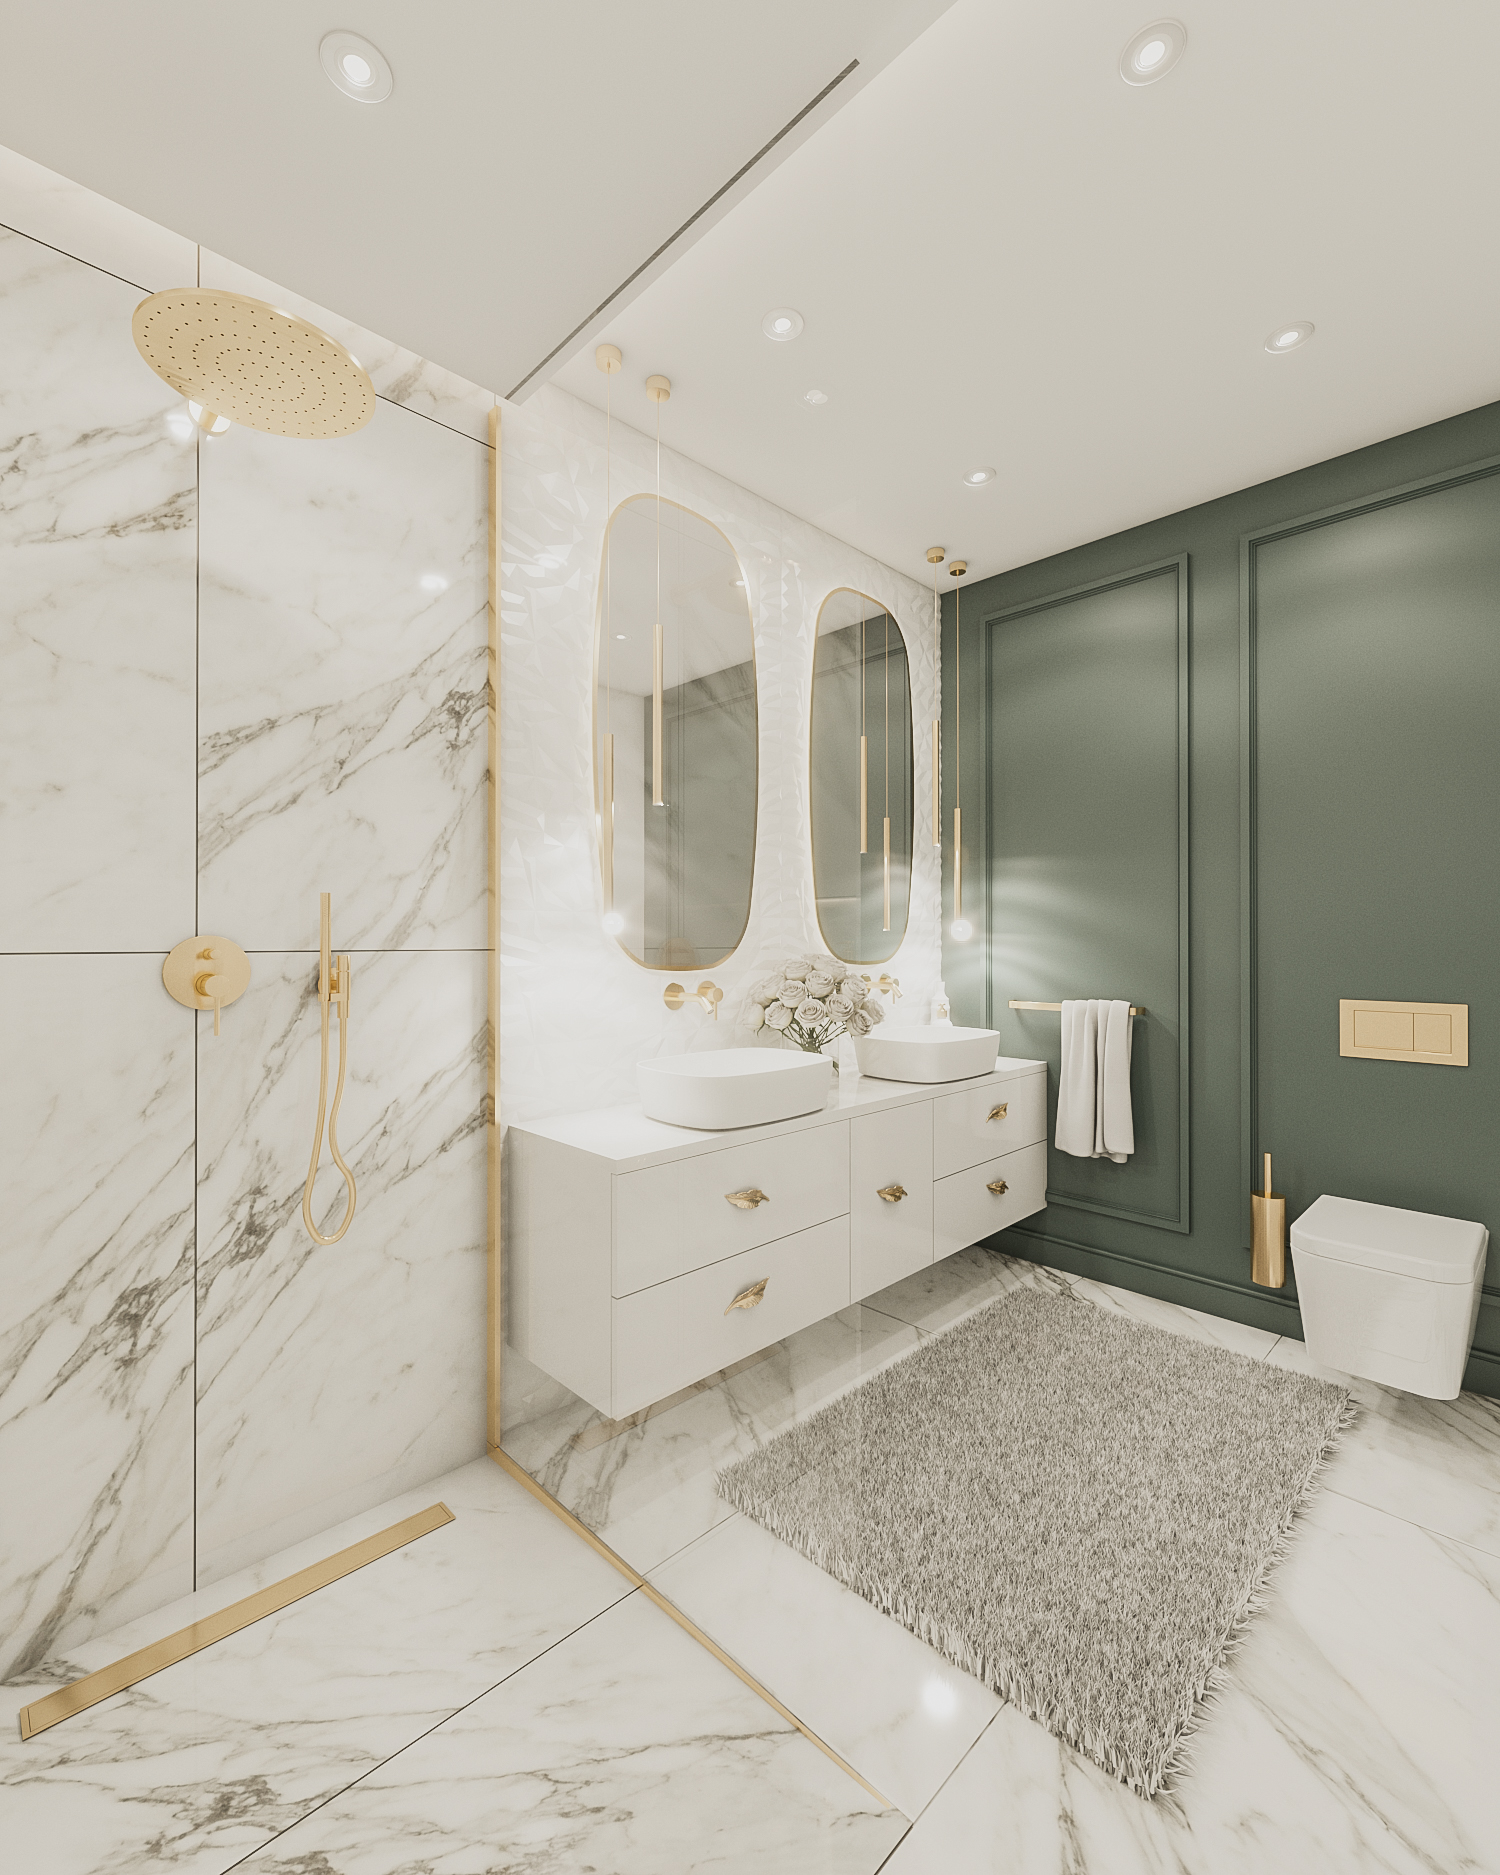 Projekt Łazienki w wykonaniu Pracowni Projektowania Wnętrz Wkwadrat gdzie w prysznicu znajduje się odpływ liniowy Duo złoty, złota listwa spadkowa (prawa) oraz złote lampy i dodatki.